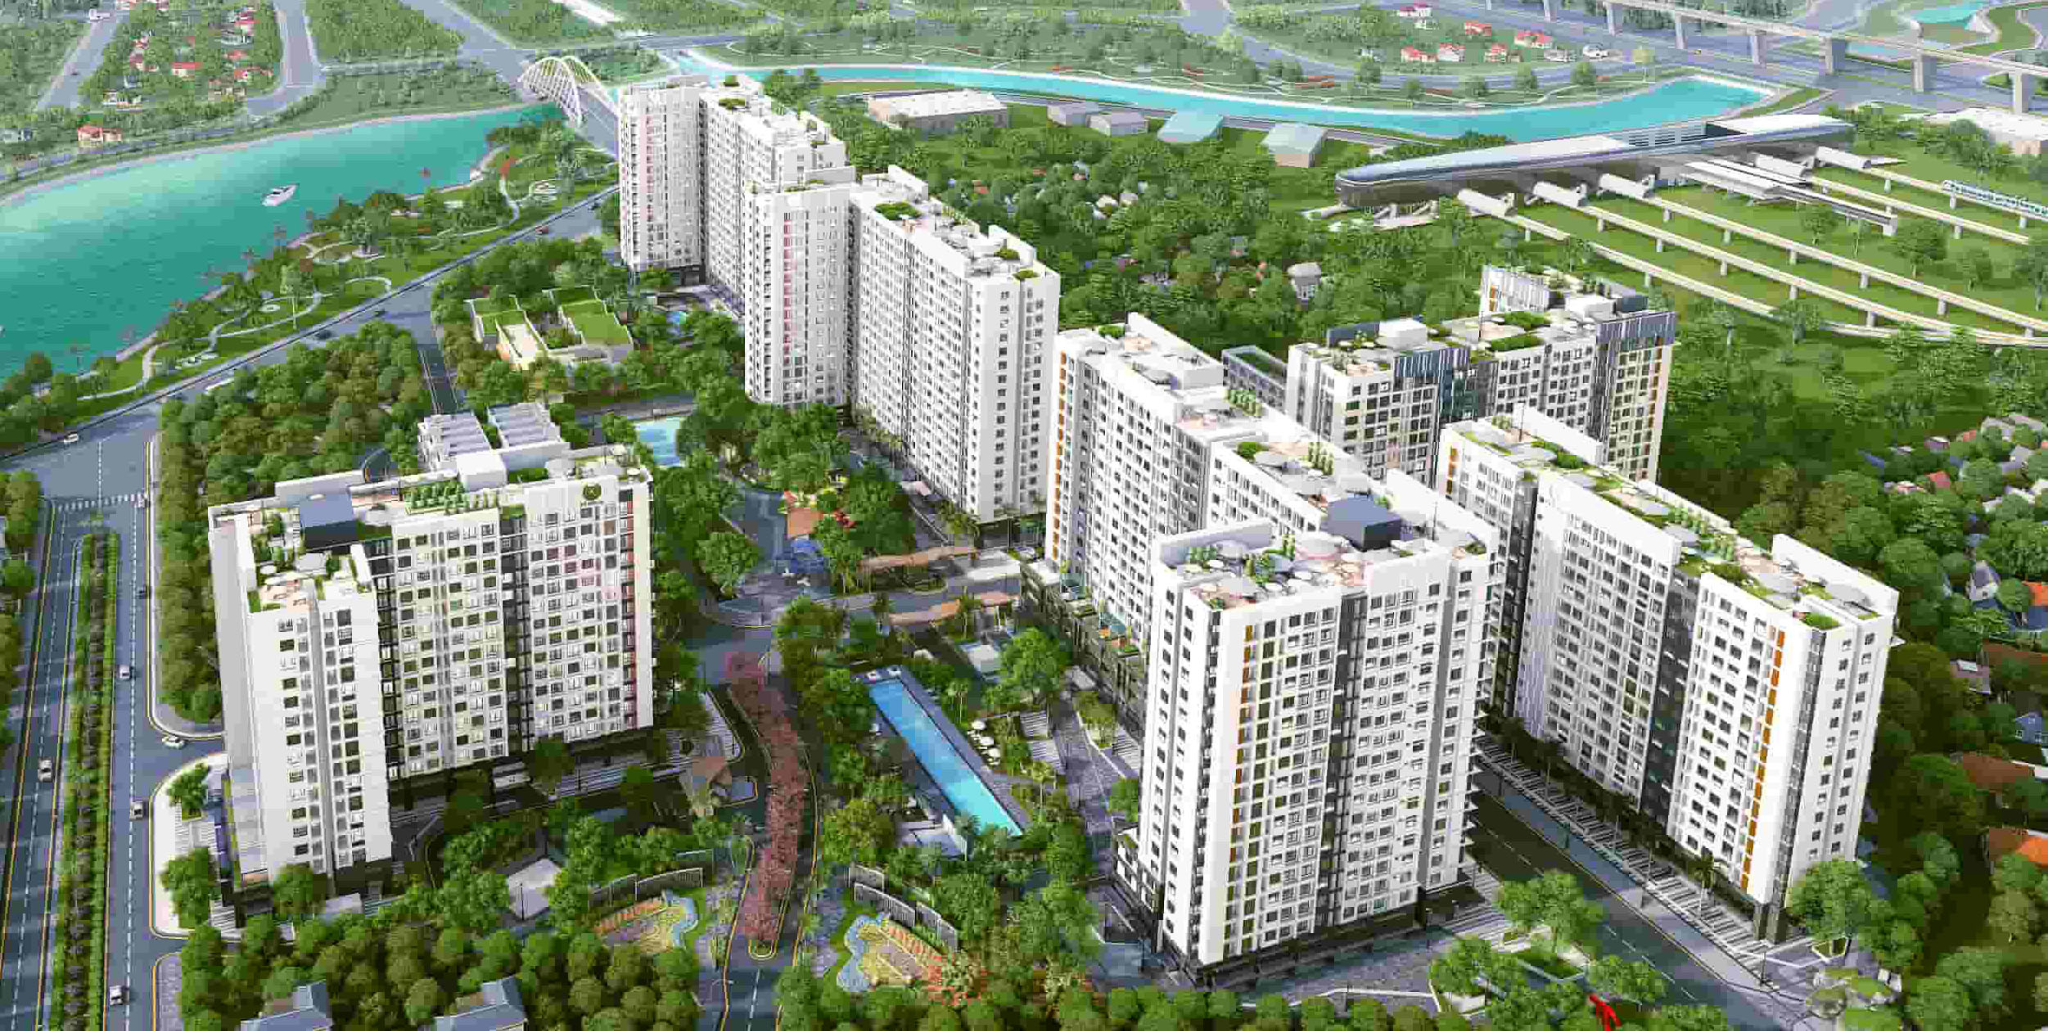 phuong-nao-quan-12-co-nhieu-can-ho-3-phong-ngu-dang-ban-nhat-onehousing-3